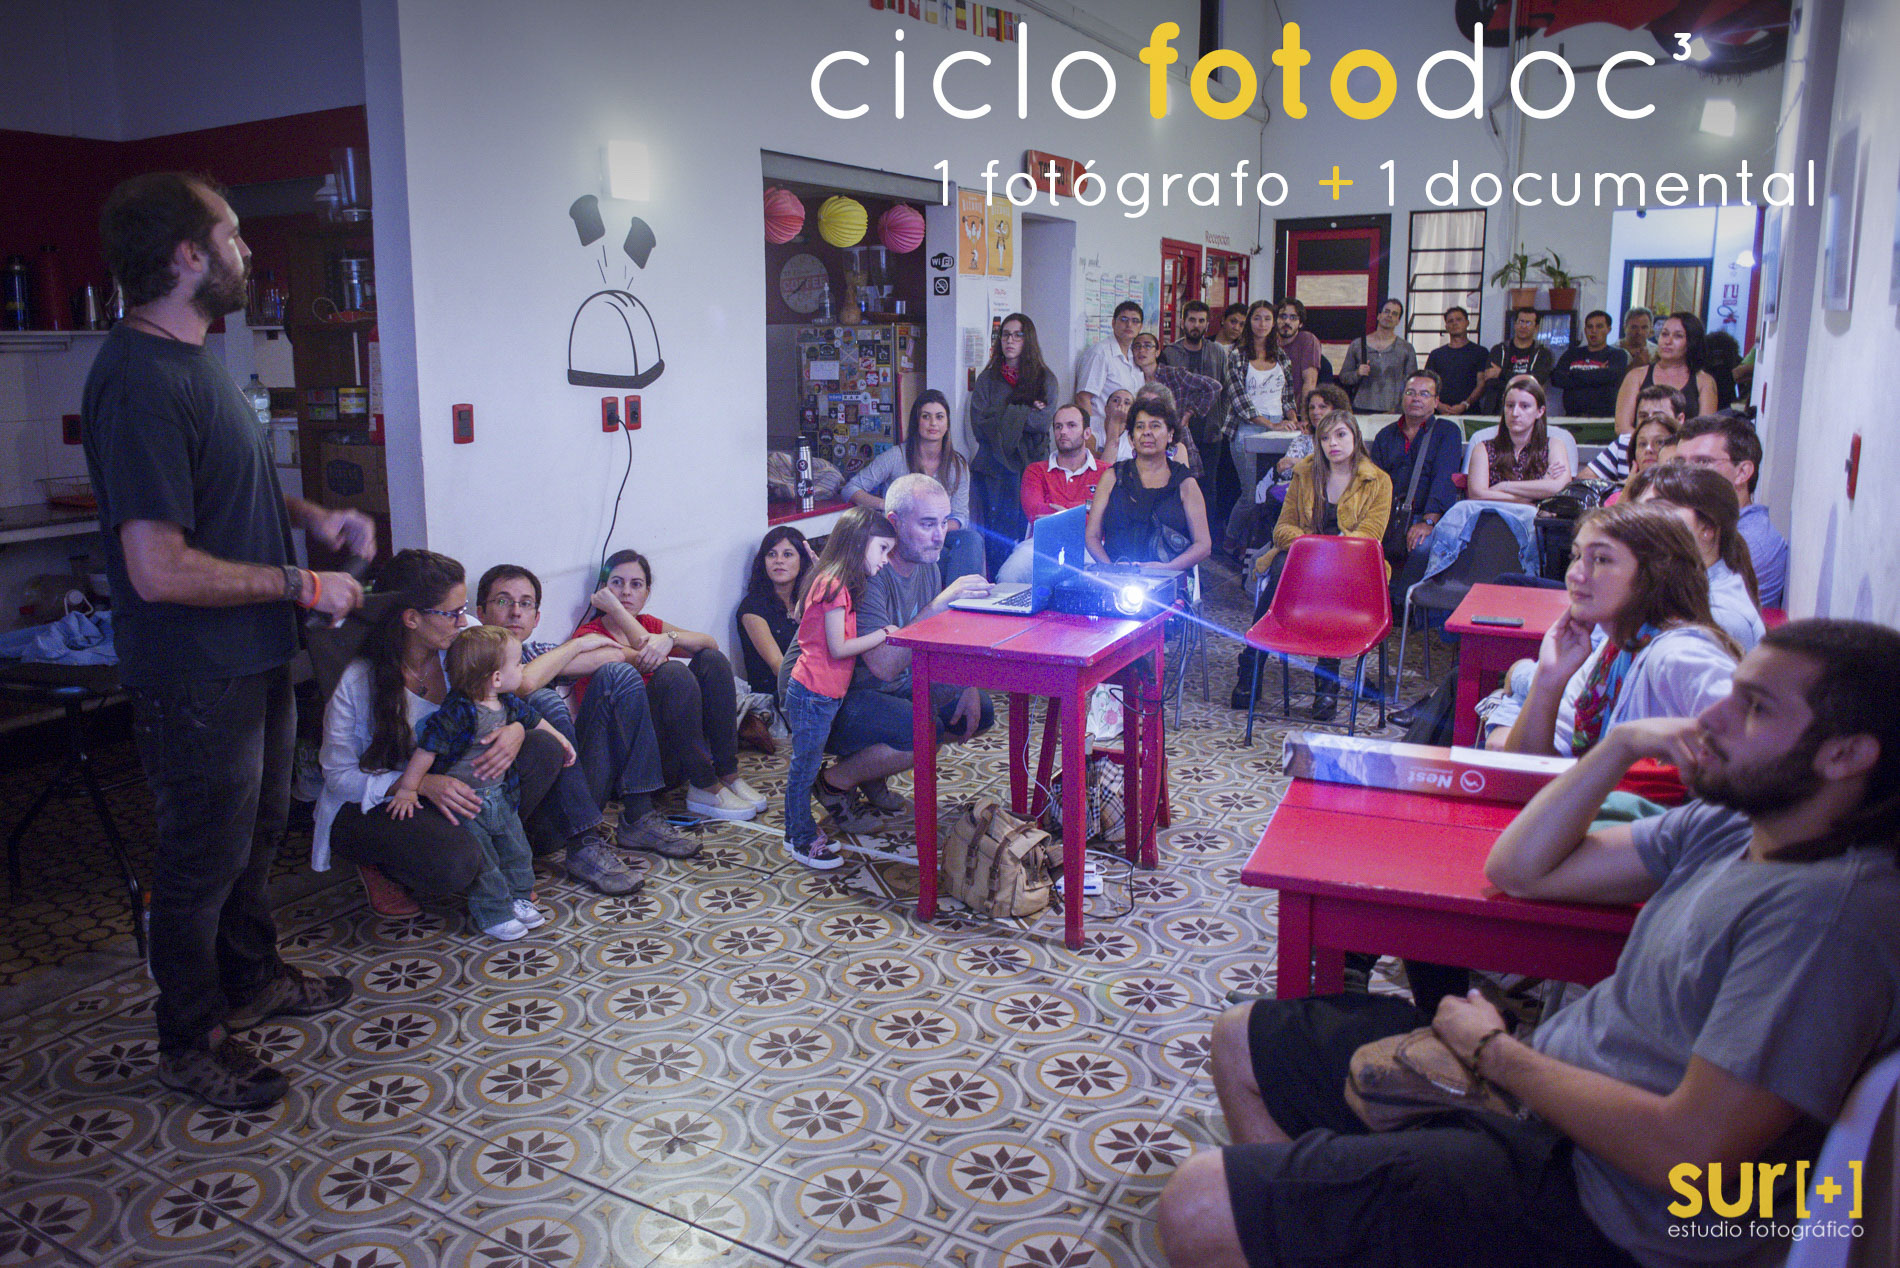 CicloFOTOdoc3 + Muestra fotográfica Colectiva "Años"